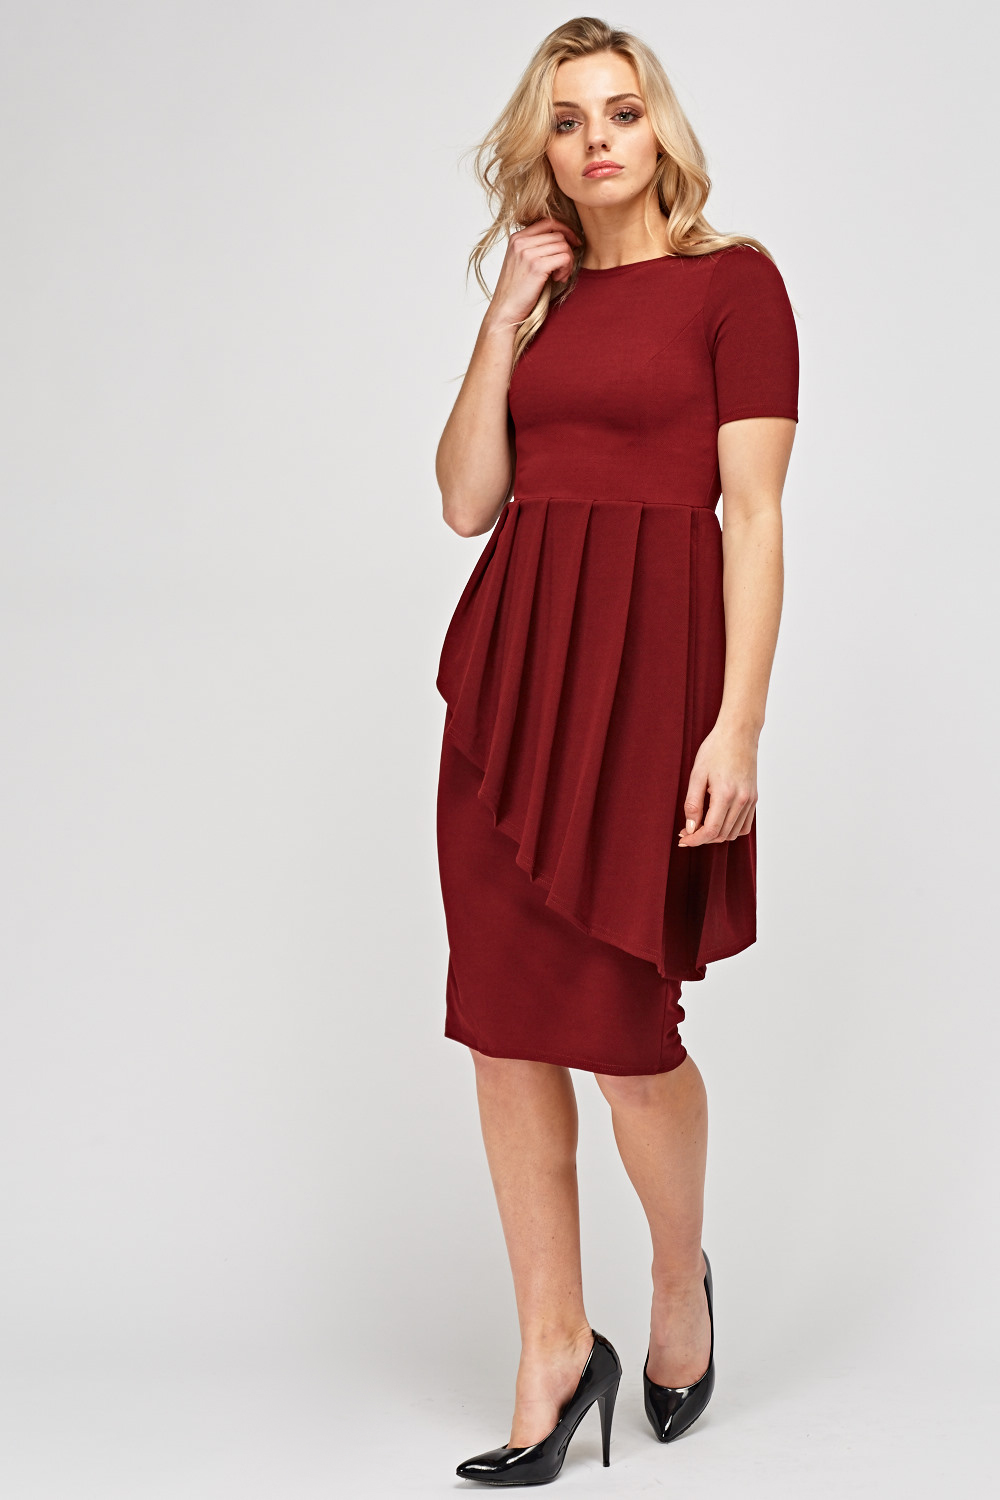 Peplum Short Sleeve Dress - Just £5